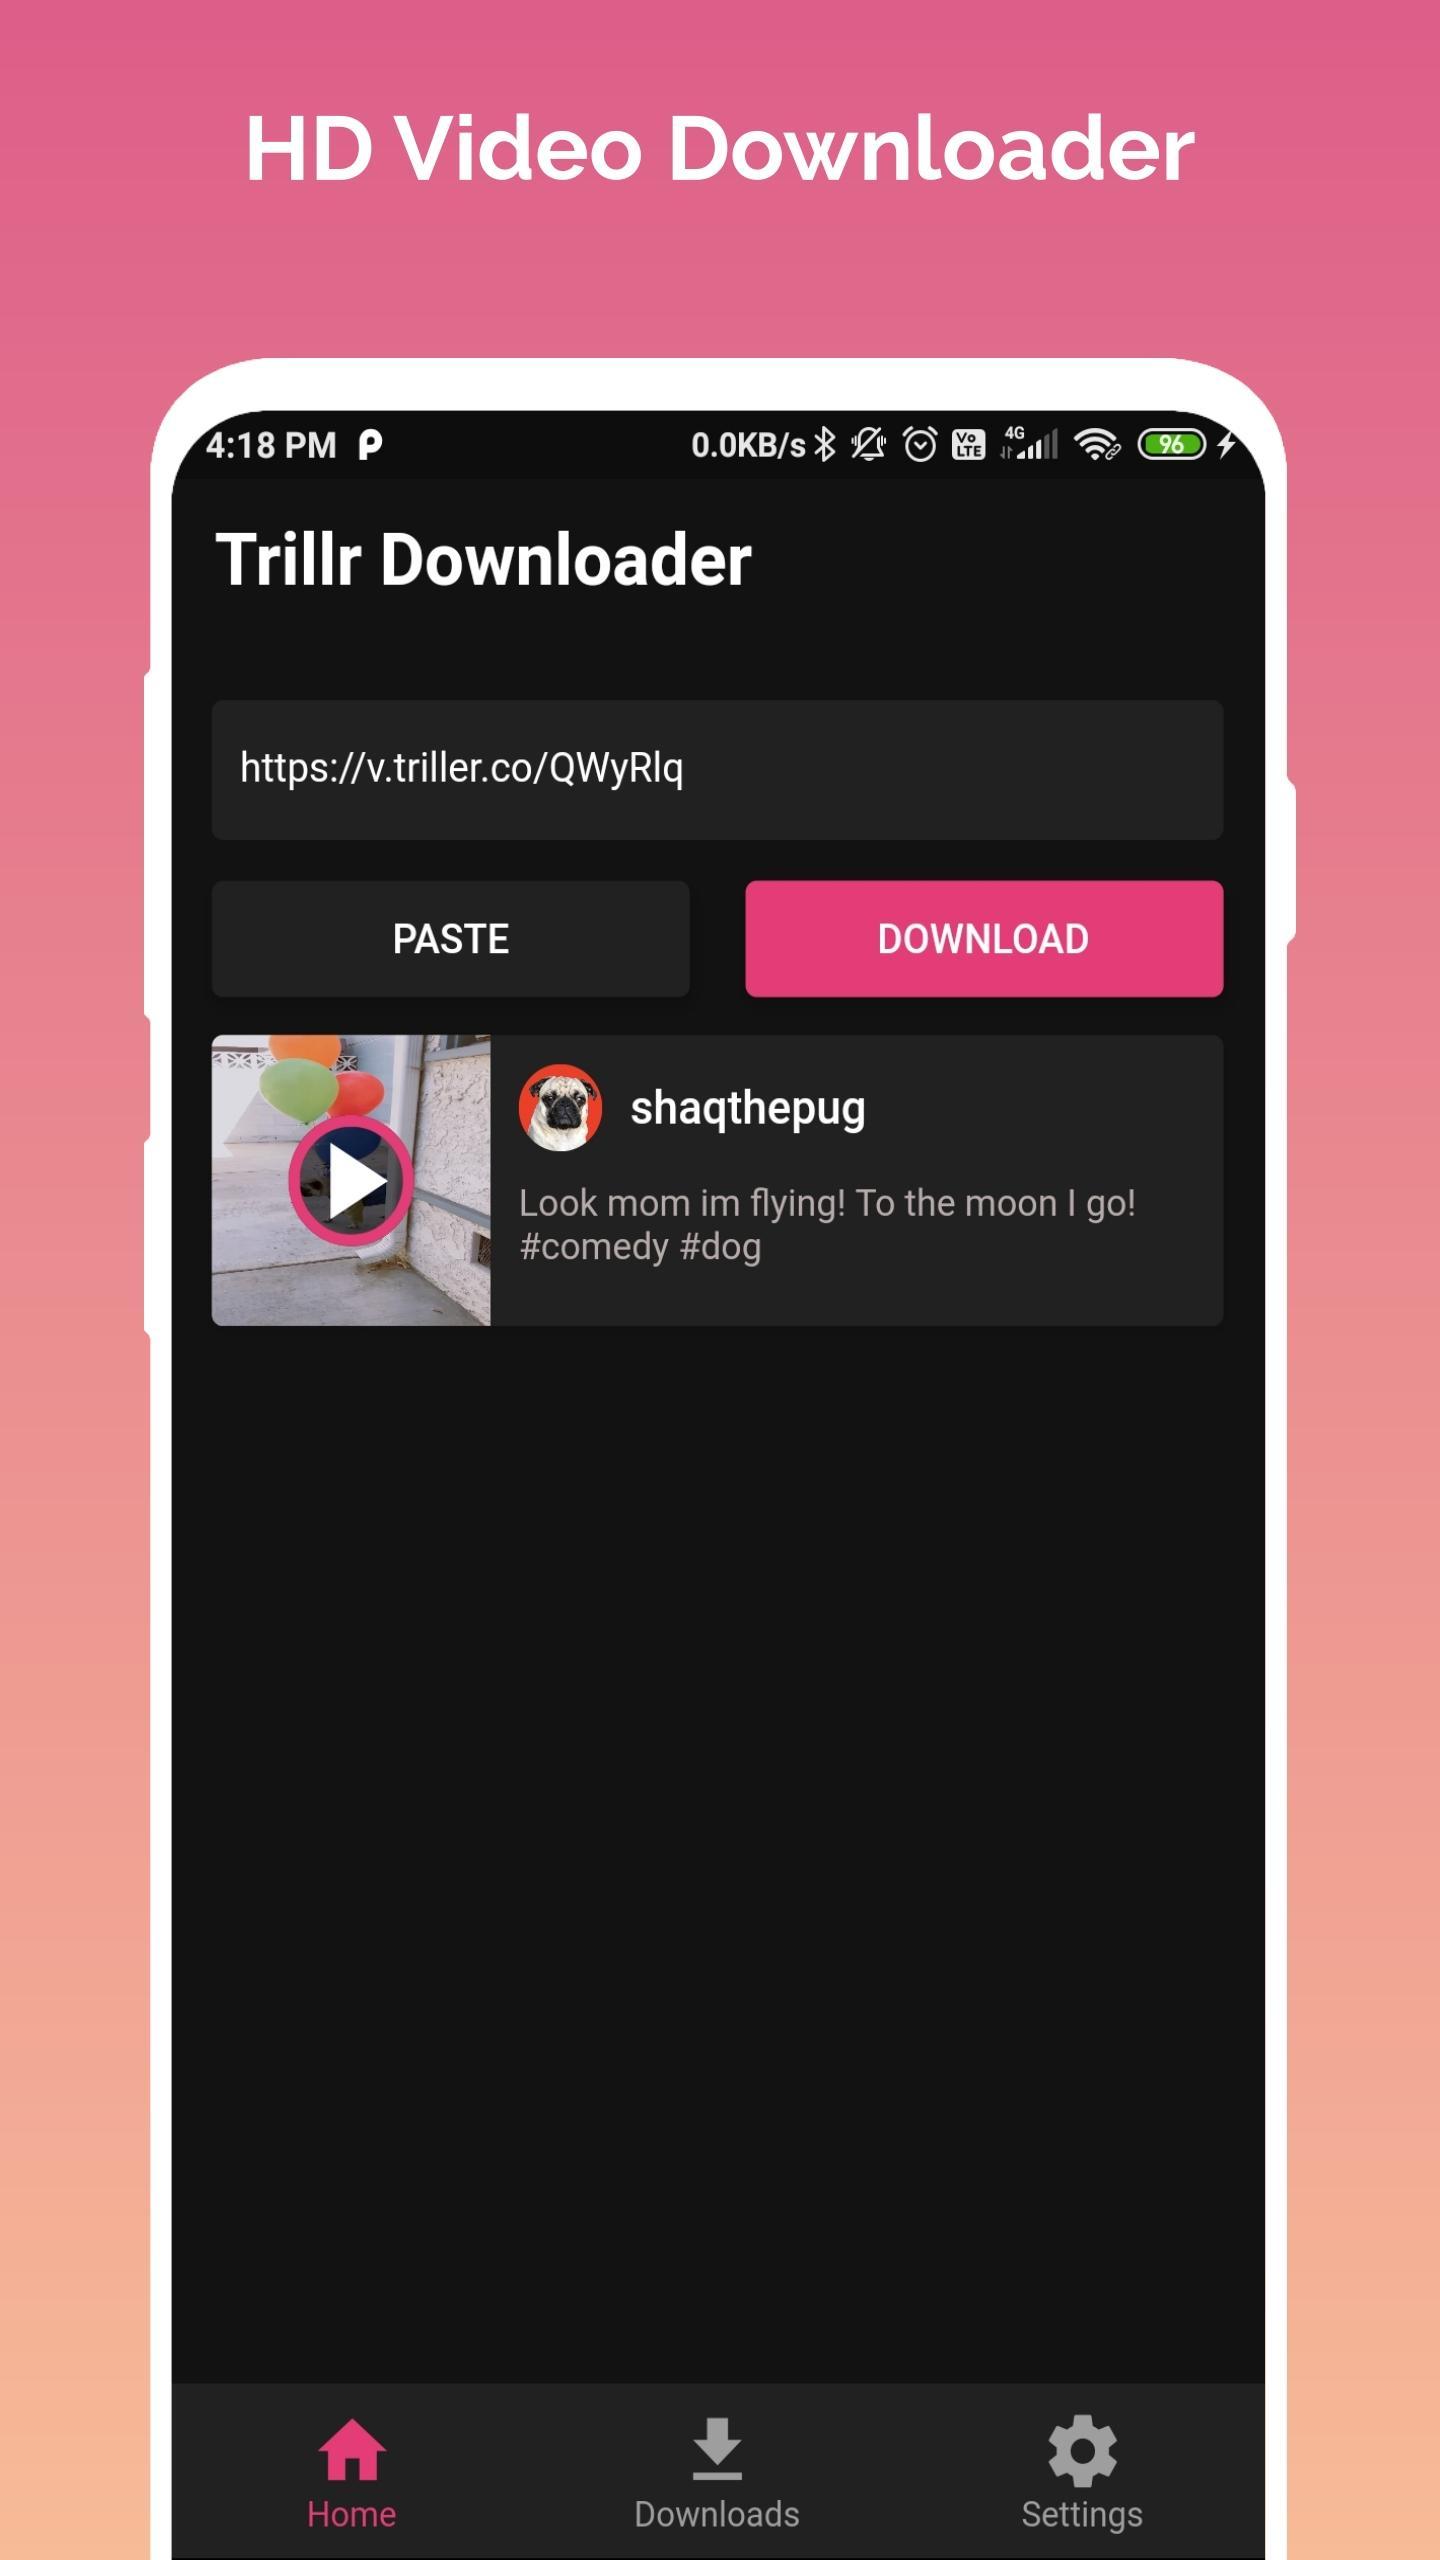 Video Downloader for Triller - Triller Downloader